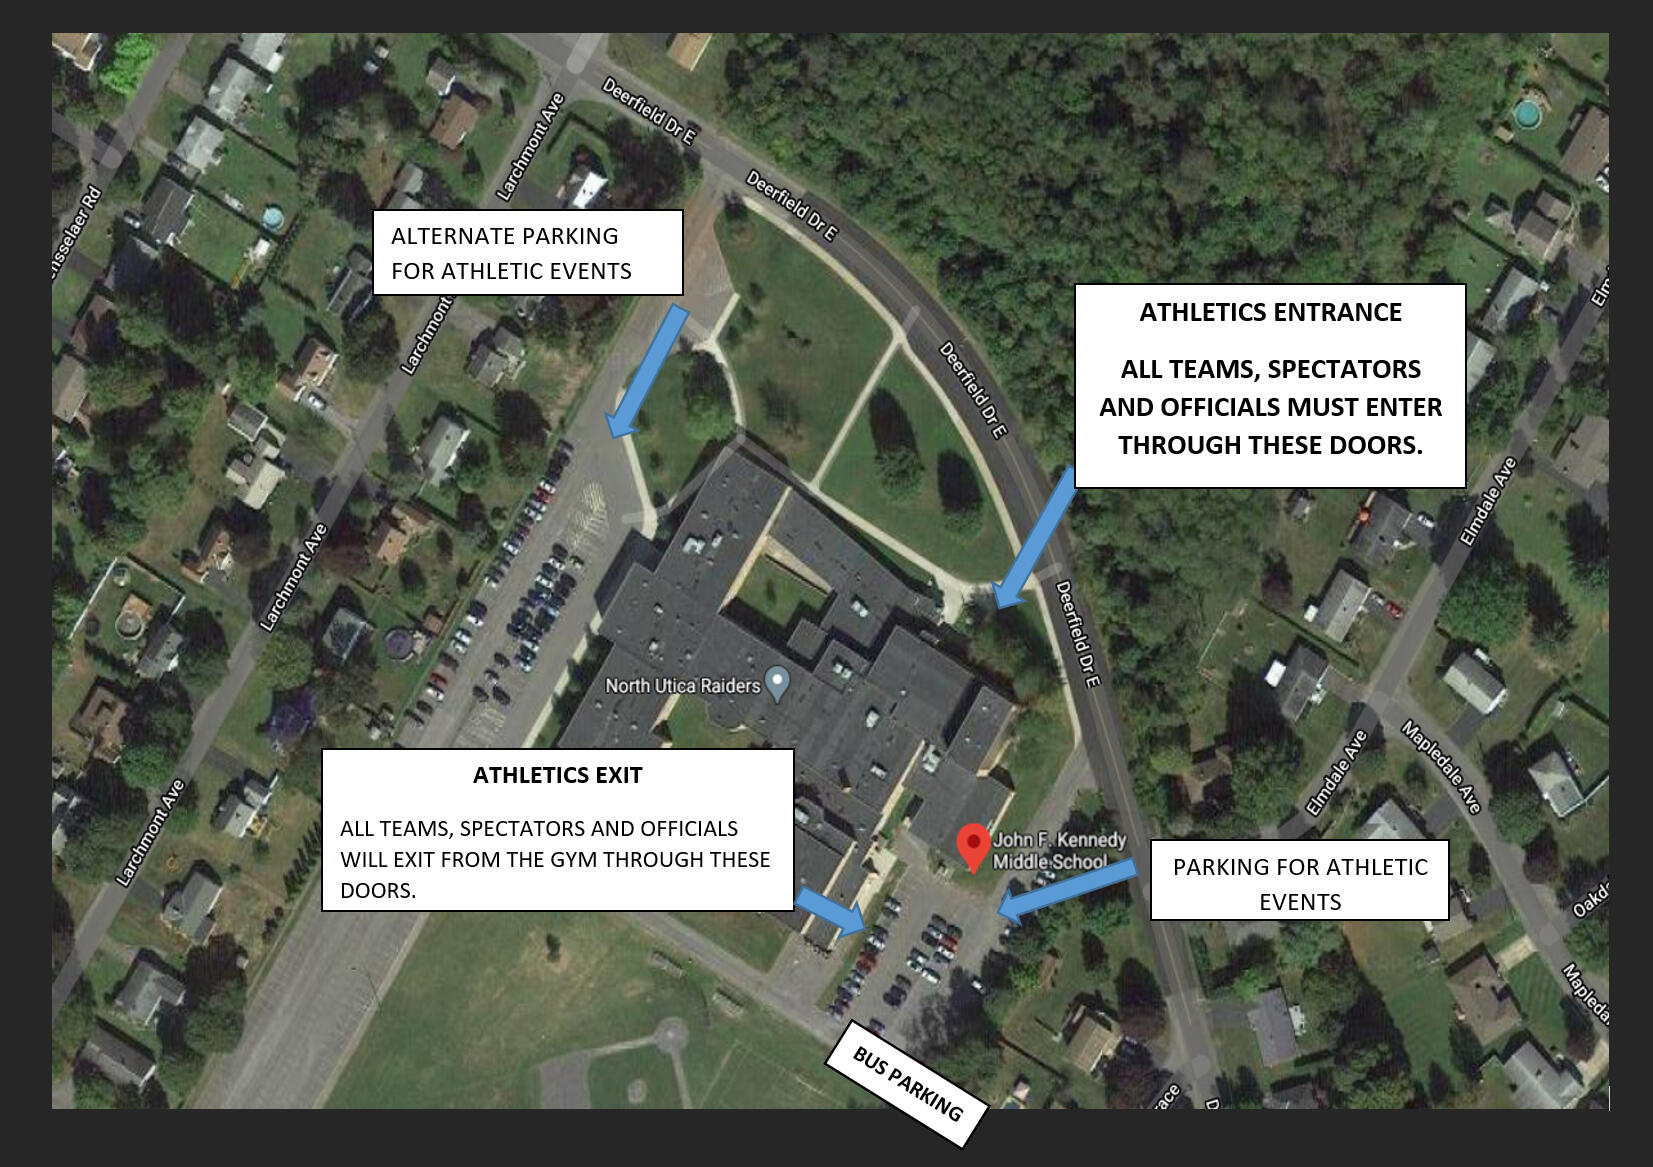 جے ایف کے مڈل اسکول میں پارکنگ کا بصری نقشہ